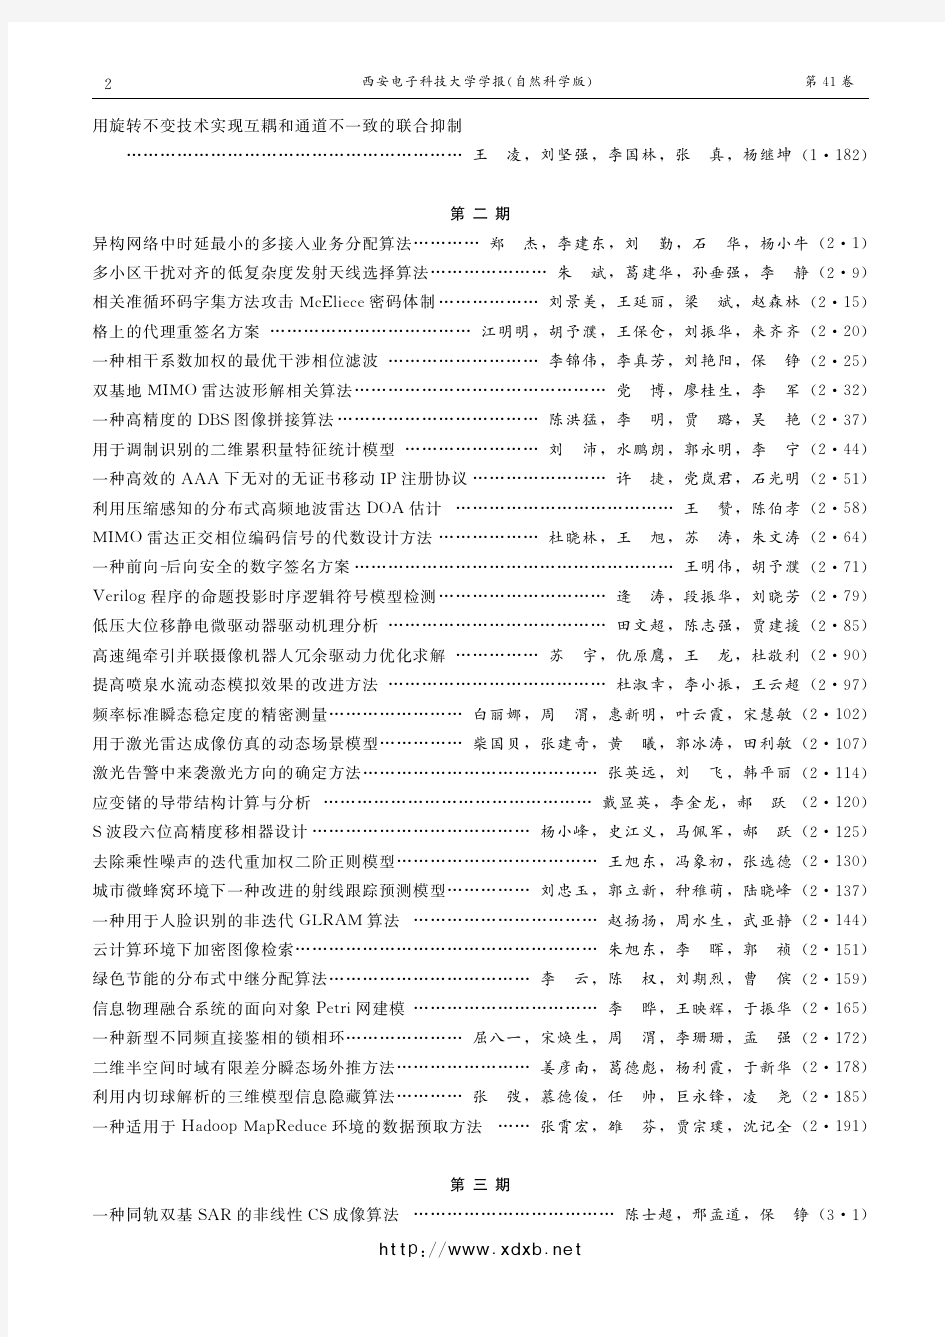 西安电子科技大学学报2014年度41卷中文总目次